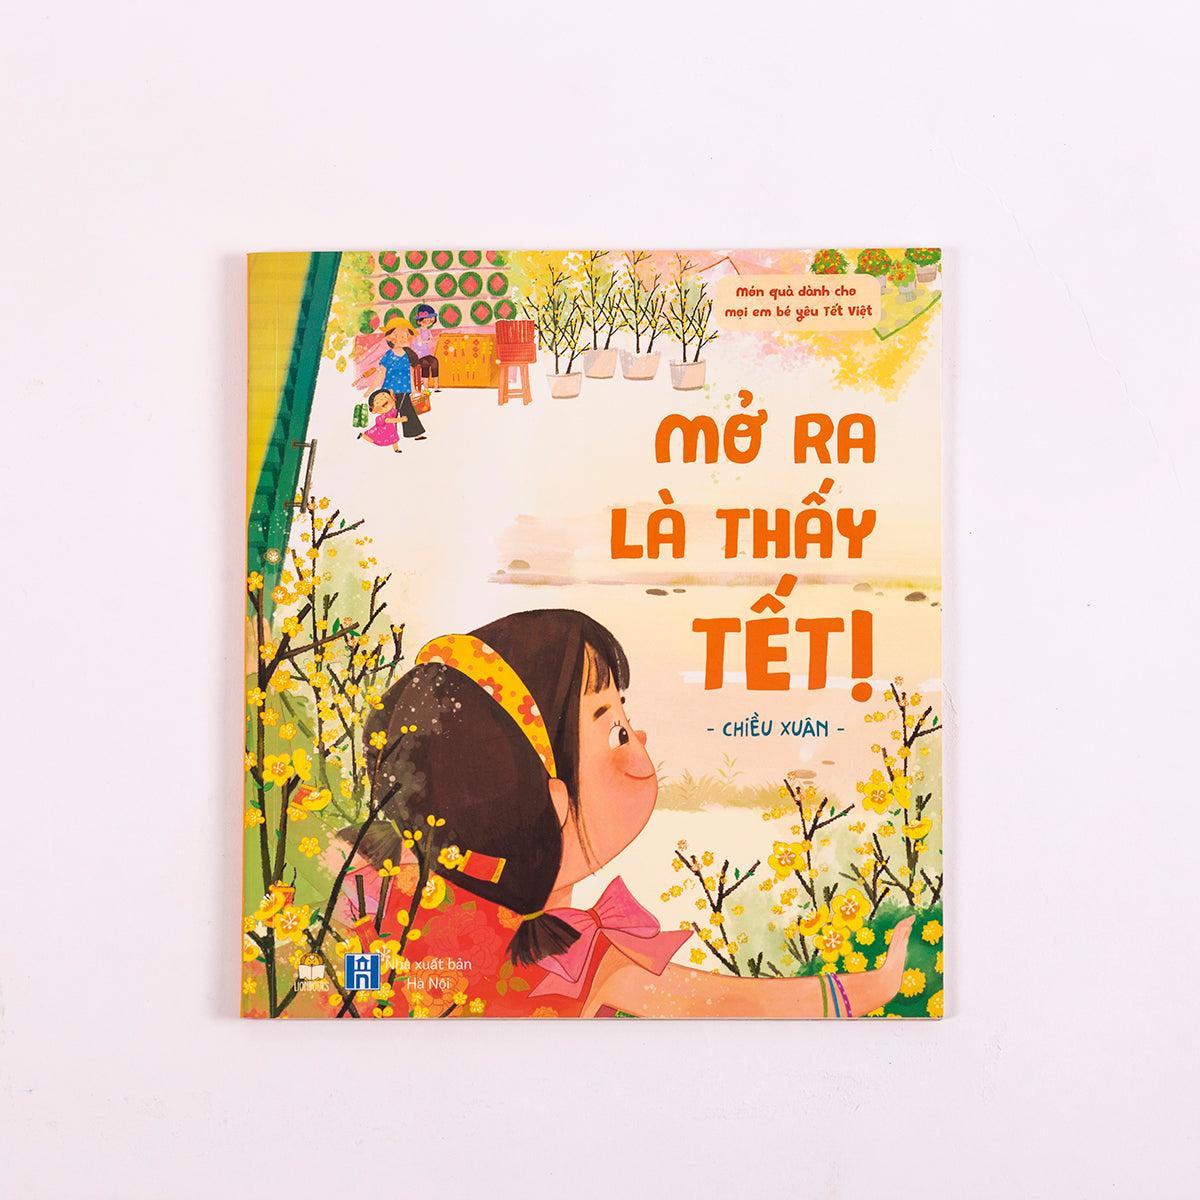 Set Mở ra là thấy Tết (phiên bản miền Nam) | Bilingual set: Open to See Tết (South Vietnam)